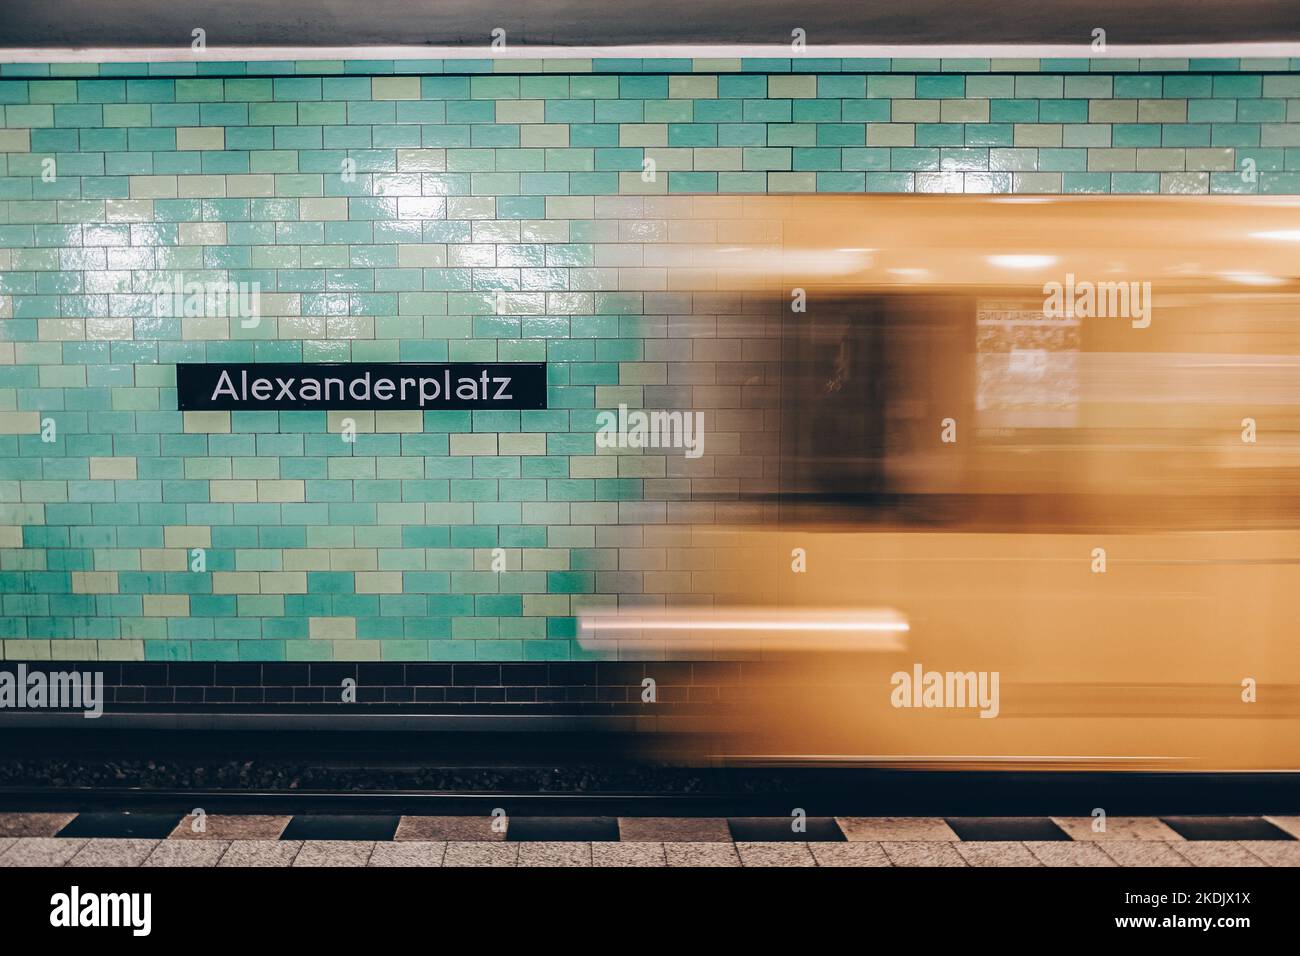 Gelbe U-Bahn Zug in Bewegung. Berlin Alexanderplatz Zeichen sichtbar an der Wand der U-Bahnstation. Stockfoto